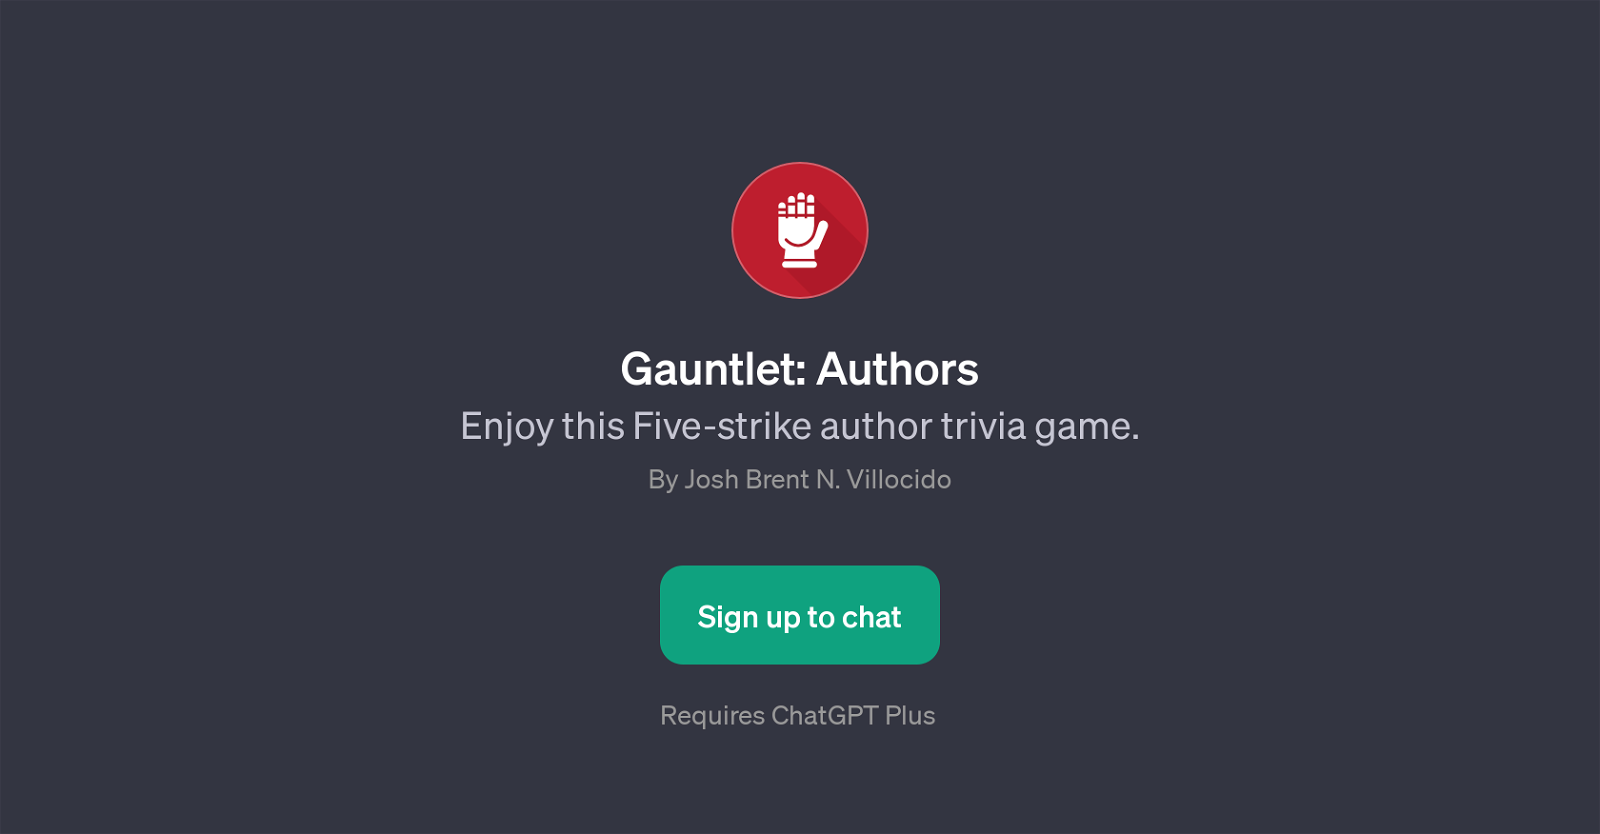 Gauntlet: Authors website